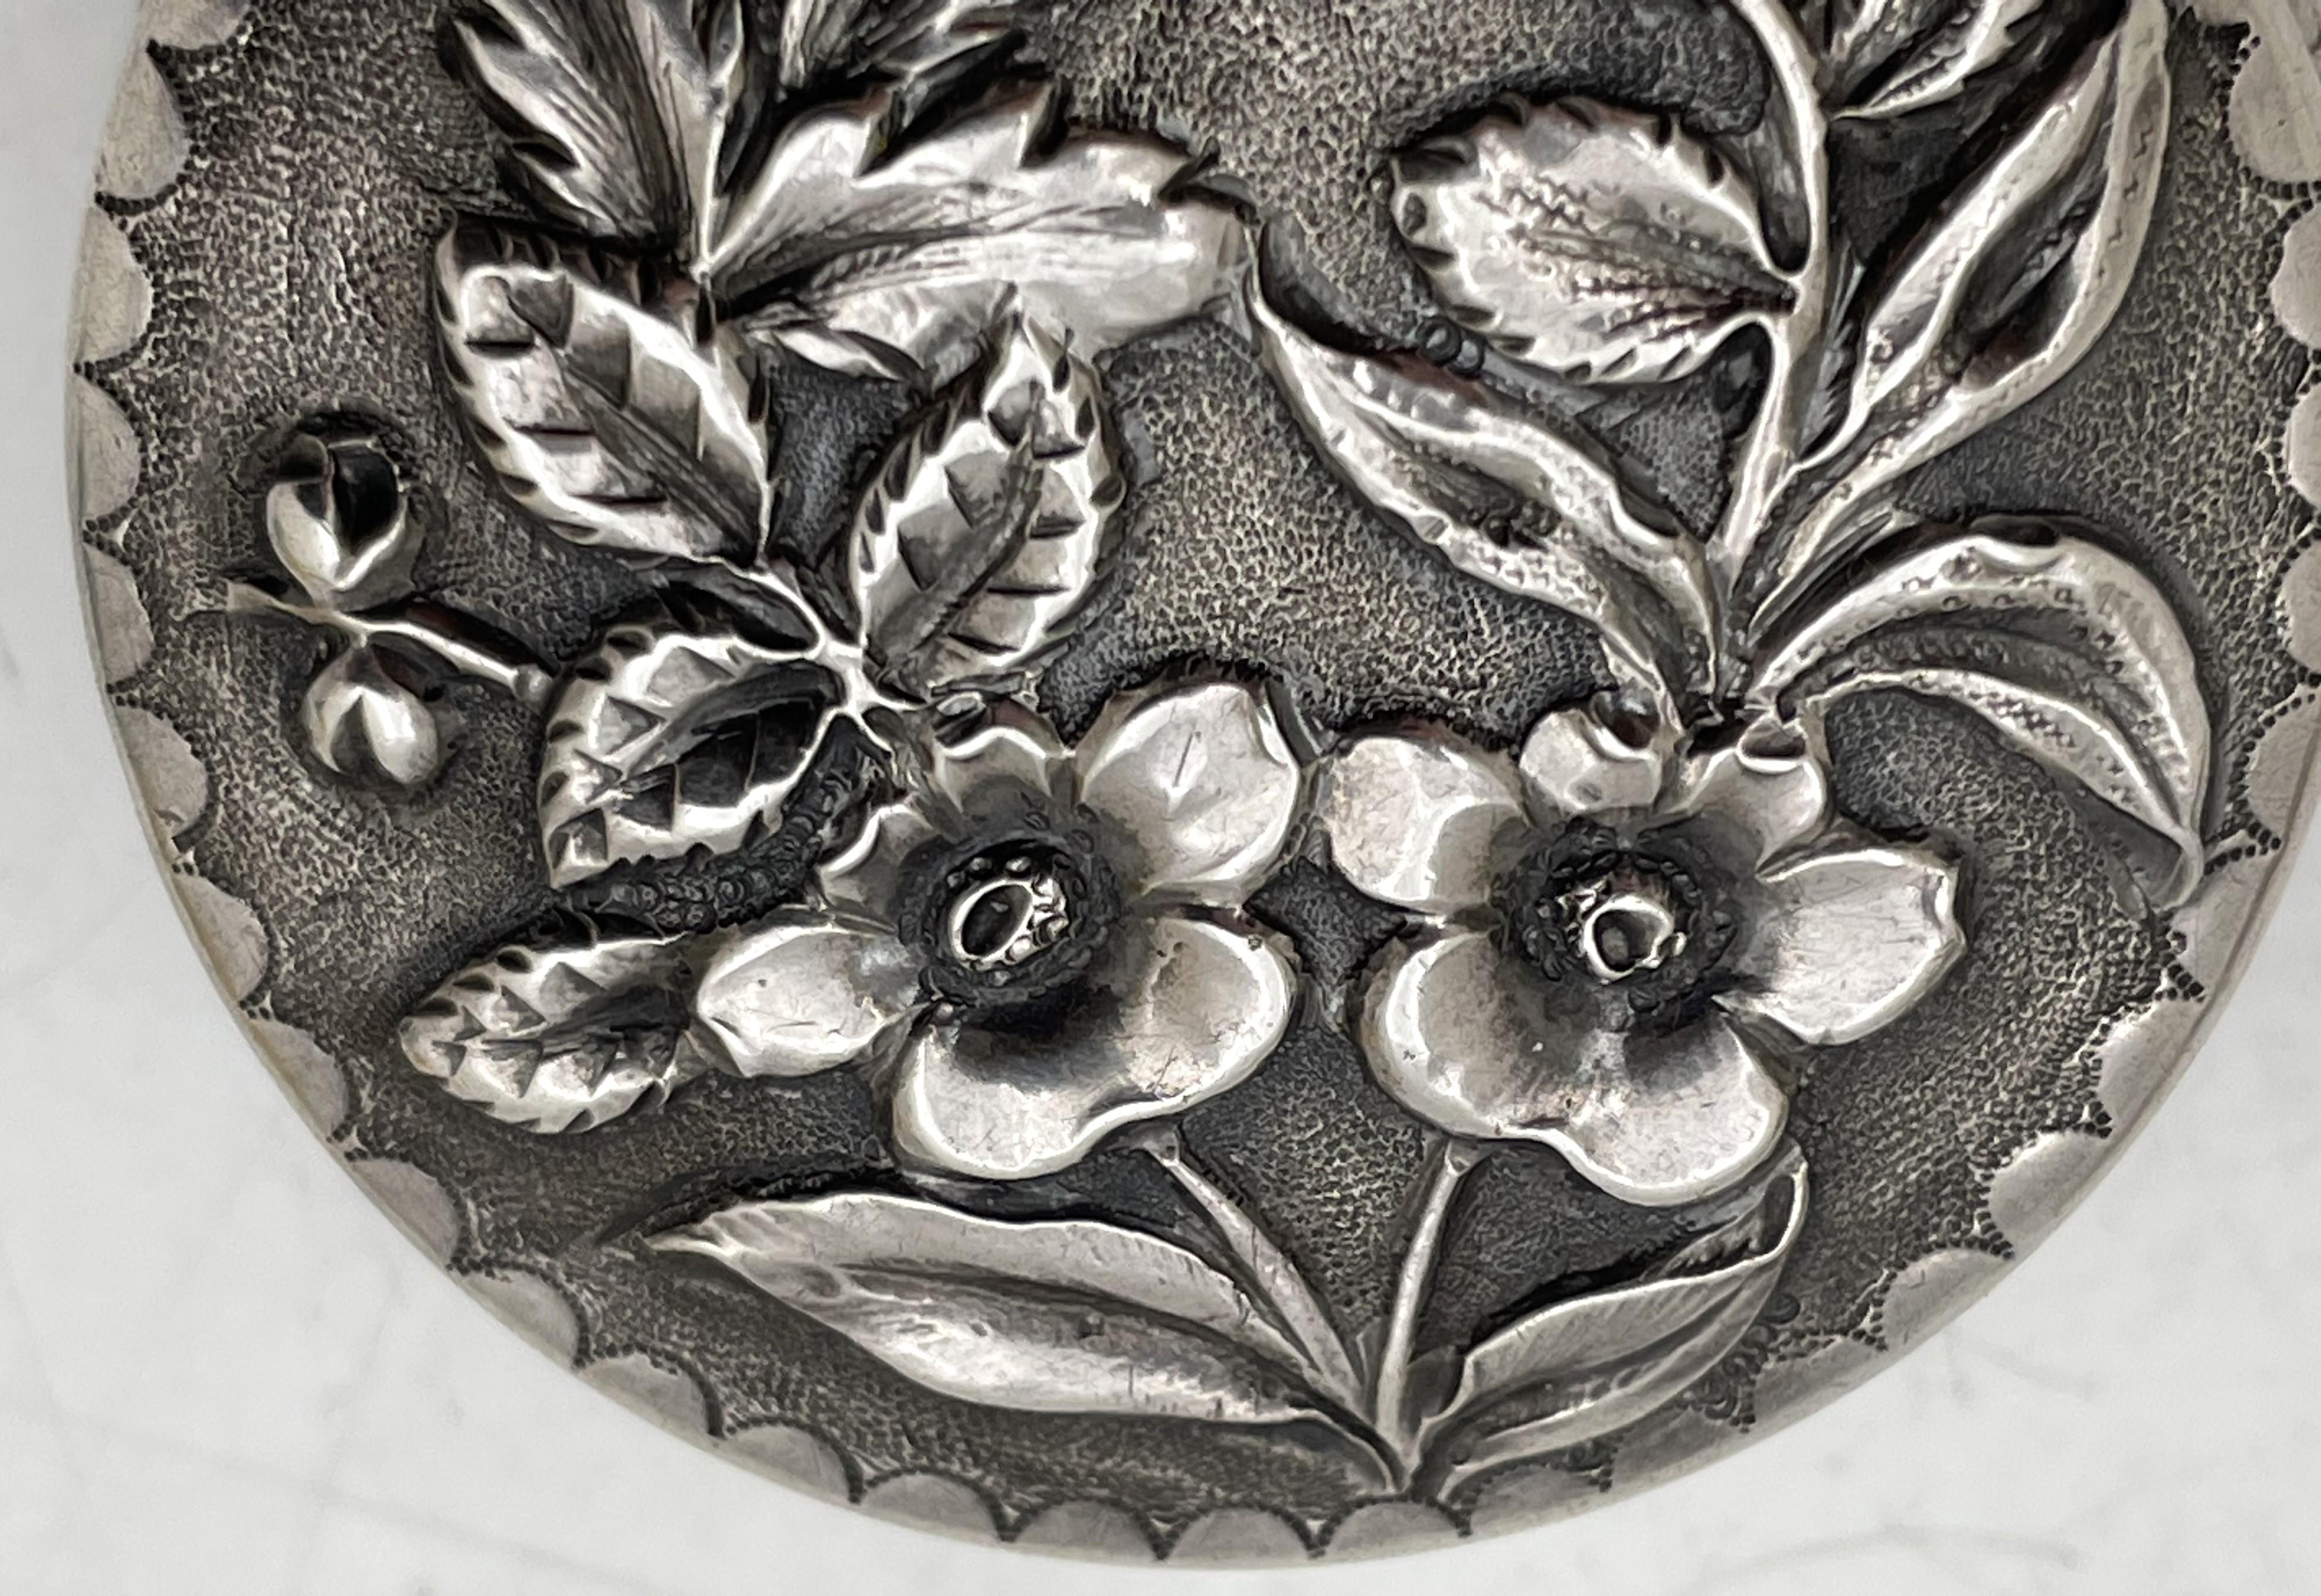 Bailey, Banks & Biddle Pillendose aus Sterlingsilber mit Repousse-Muster, schön verziert mit floralen Motiven, innen vergoldet. aus dem späten 19. Jahrhundert. Er misst 1 7/8'' mal 1/3'' in der Höhe und trägt die abgebildeten Punzen. 

Das